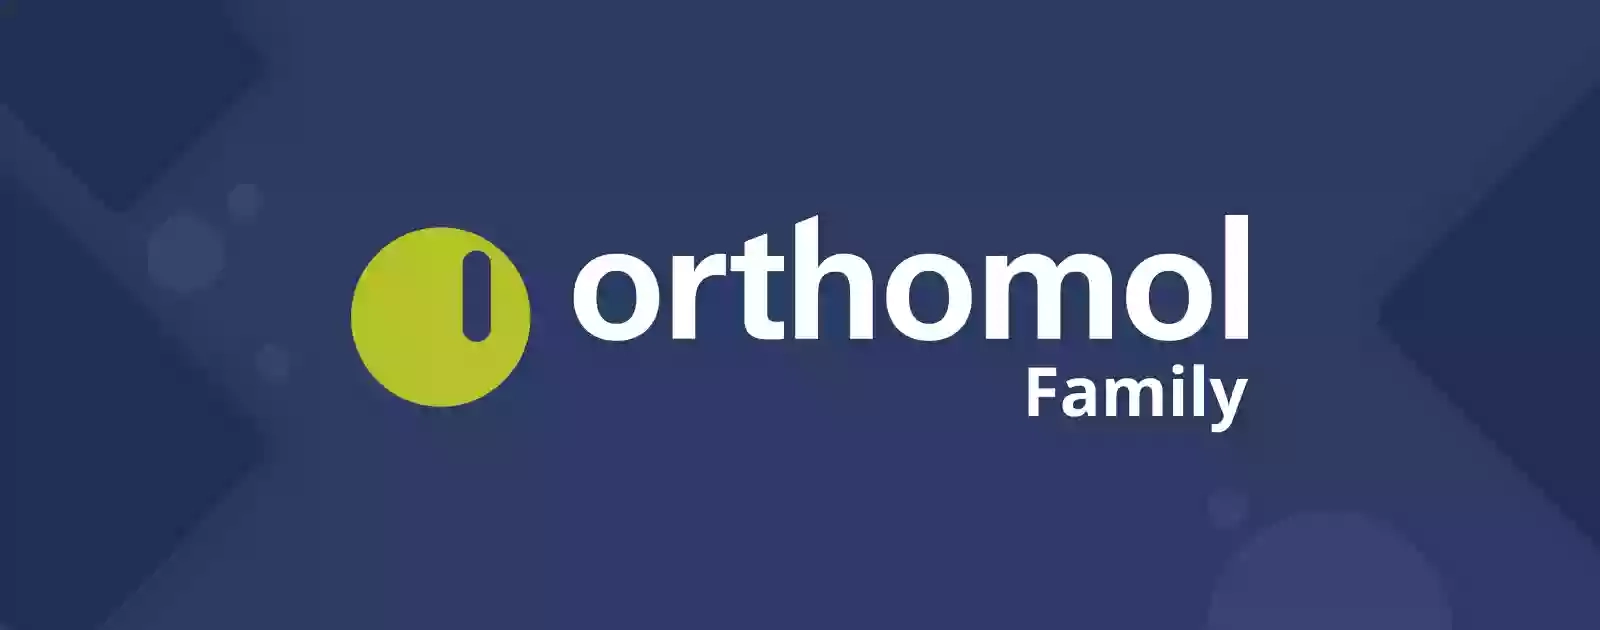 Ортомол, витамины Orthomol - Официальный представитель Orthomol.Family в Украине